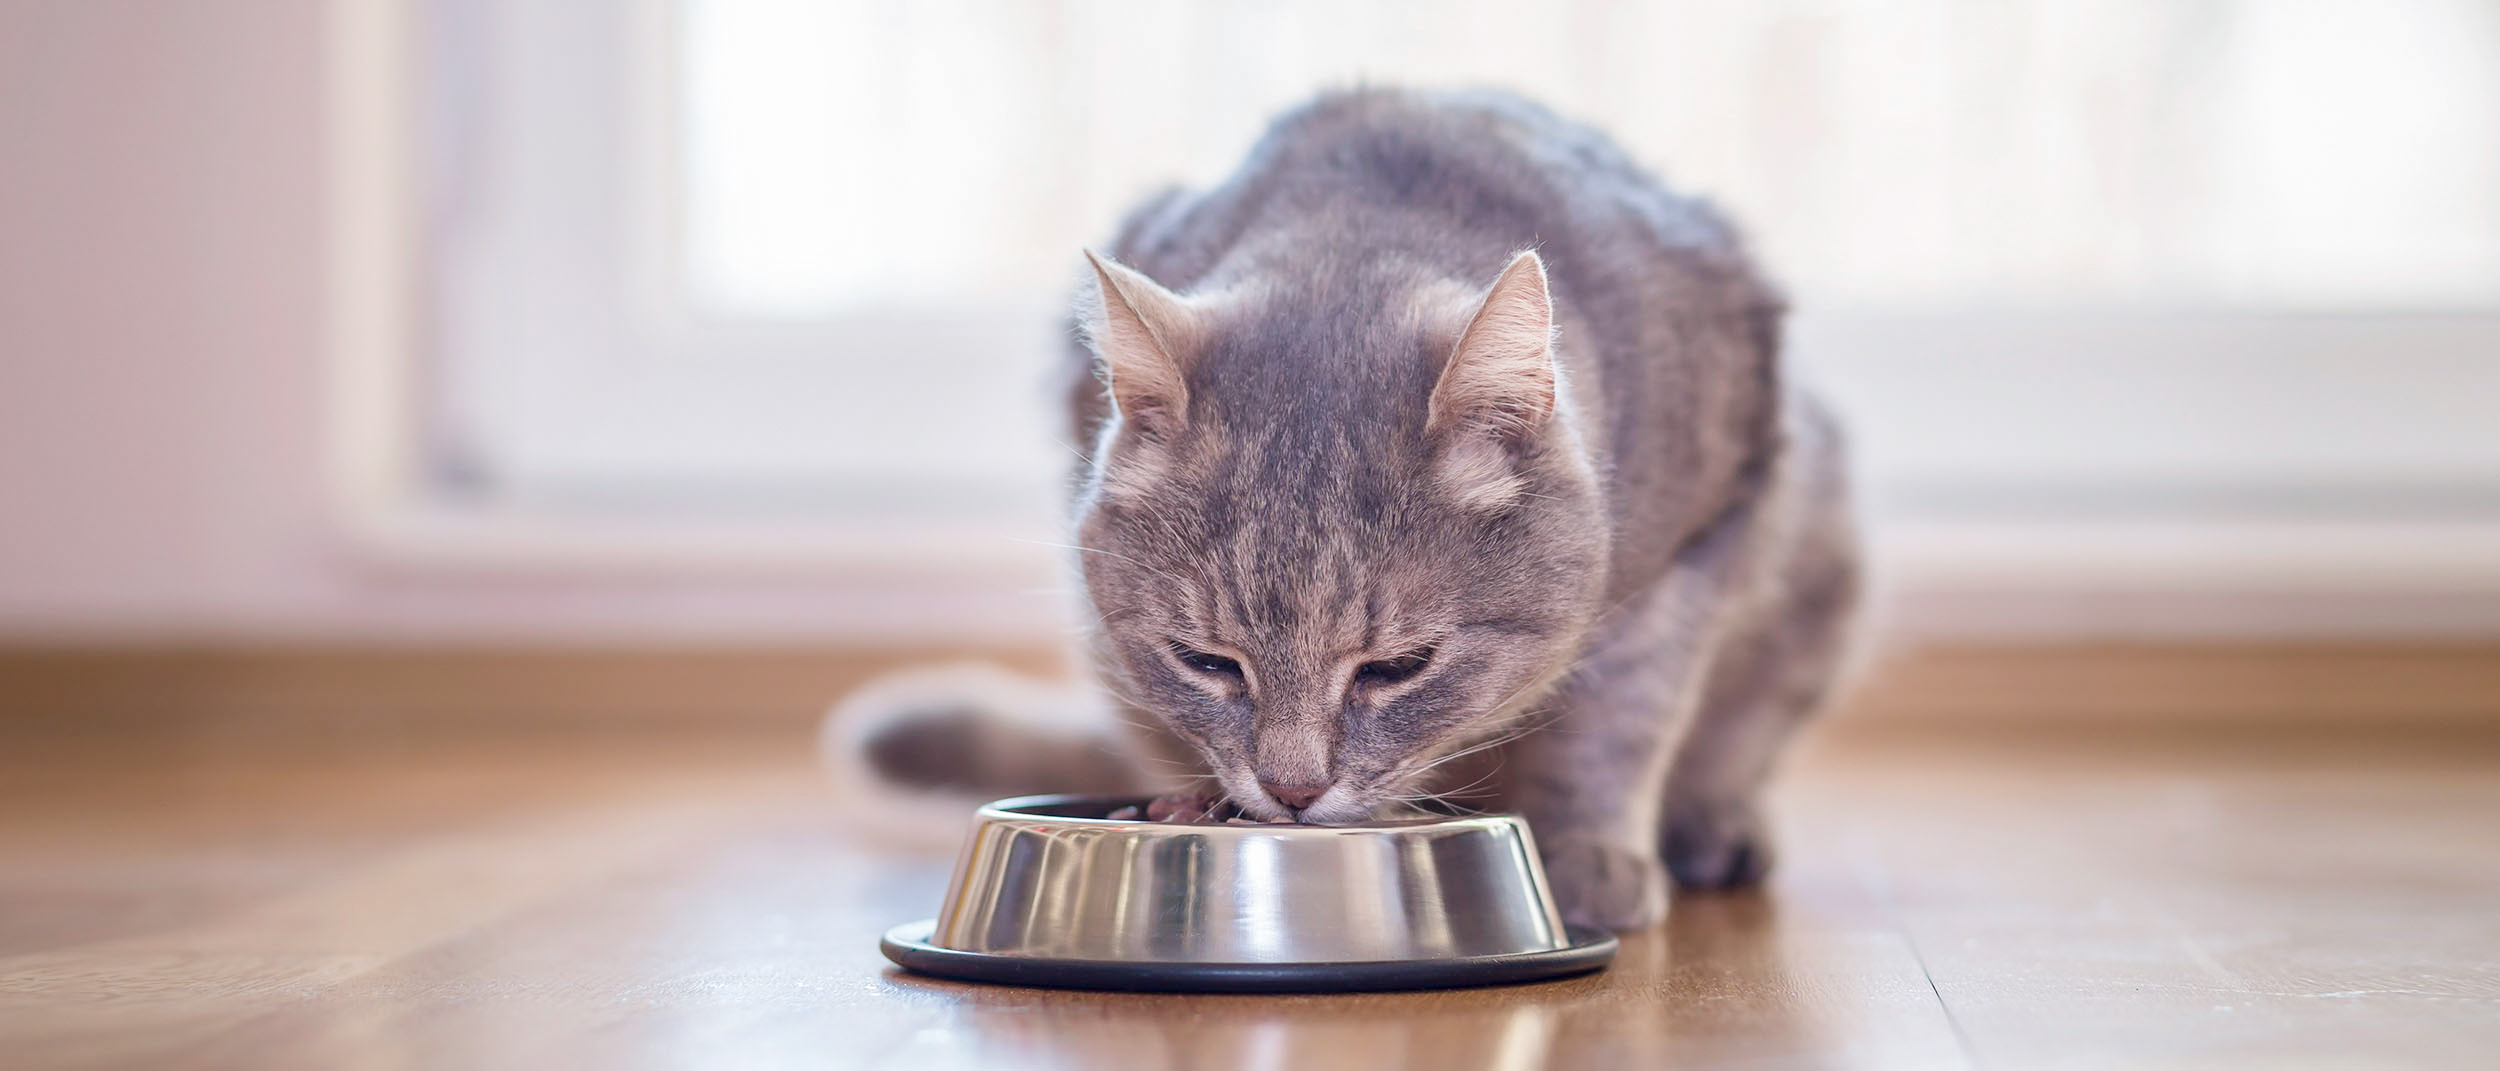 Istuva aikuinen kissa syö hopeanvärisestä kulhosta sisätiloissa.